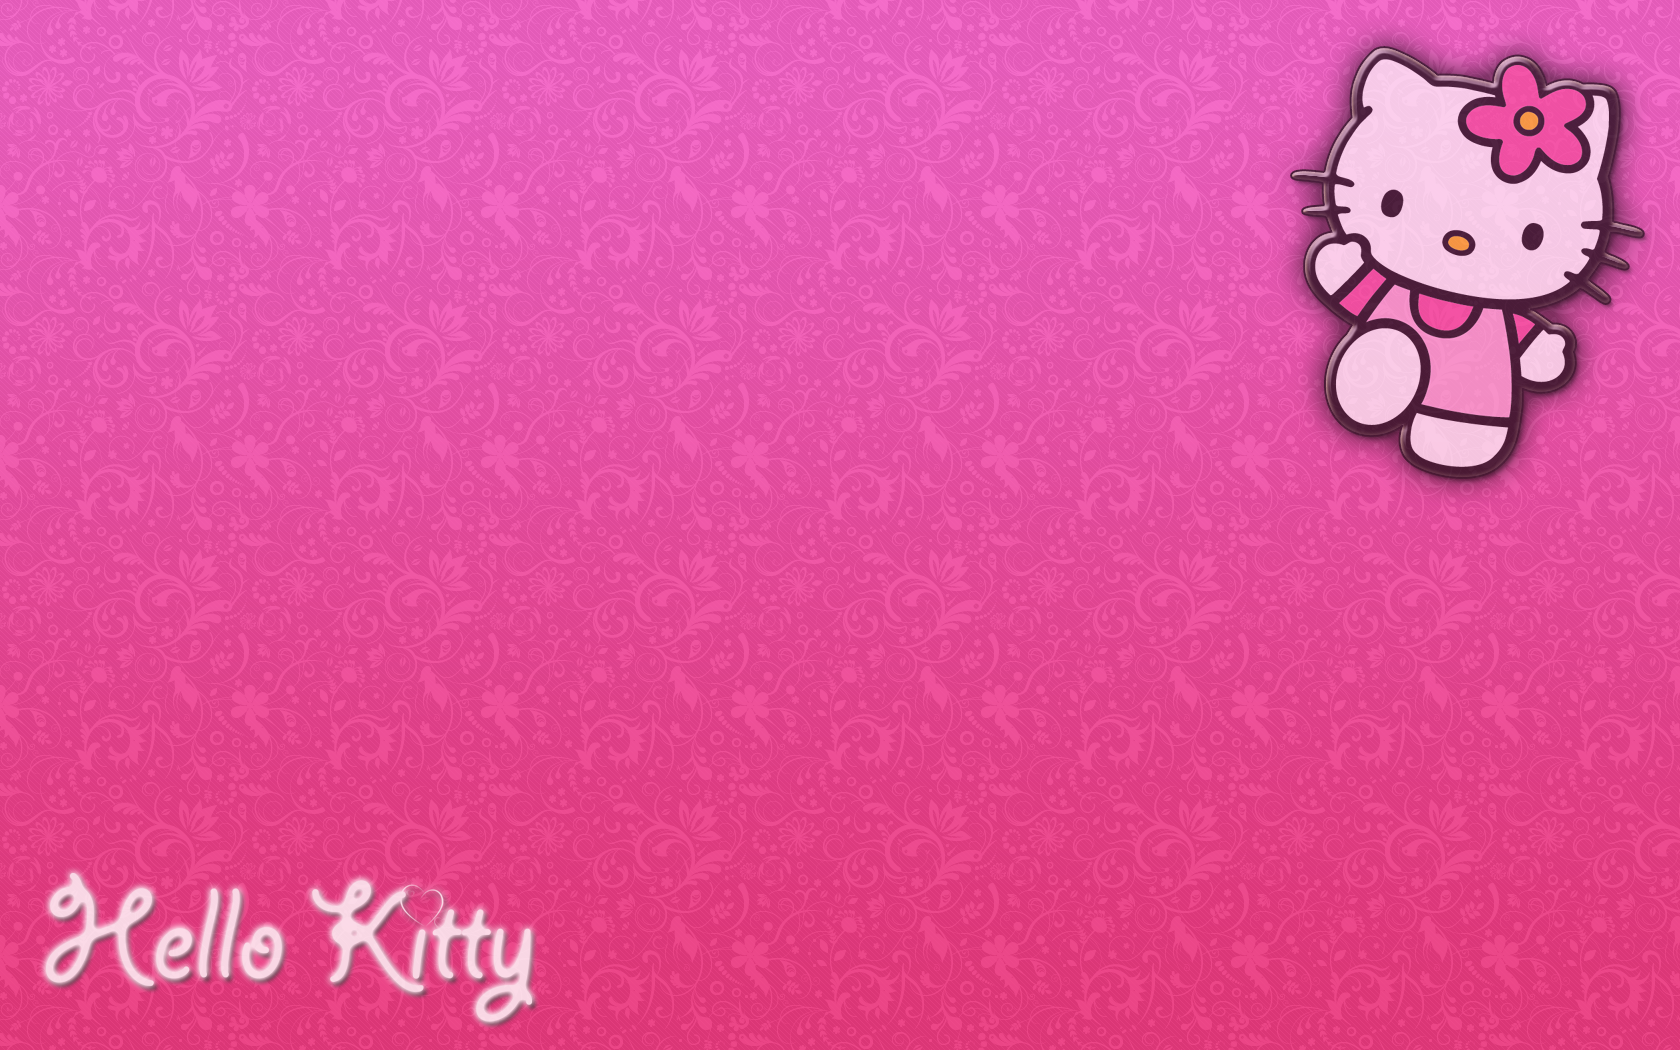 Cute Hello Kitty Wallpaper Desktop On